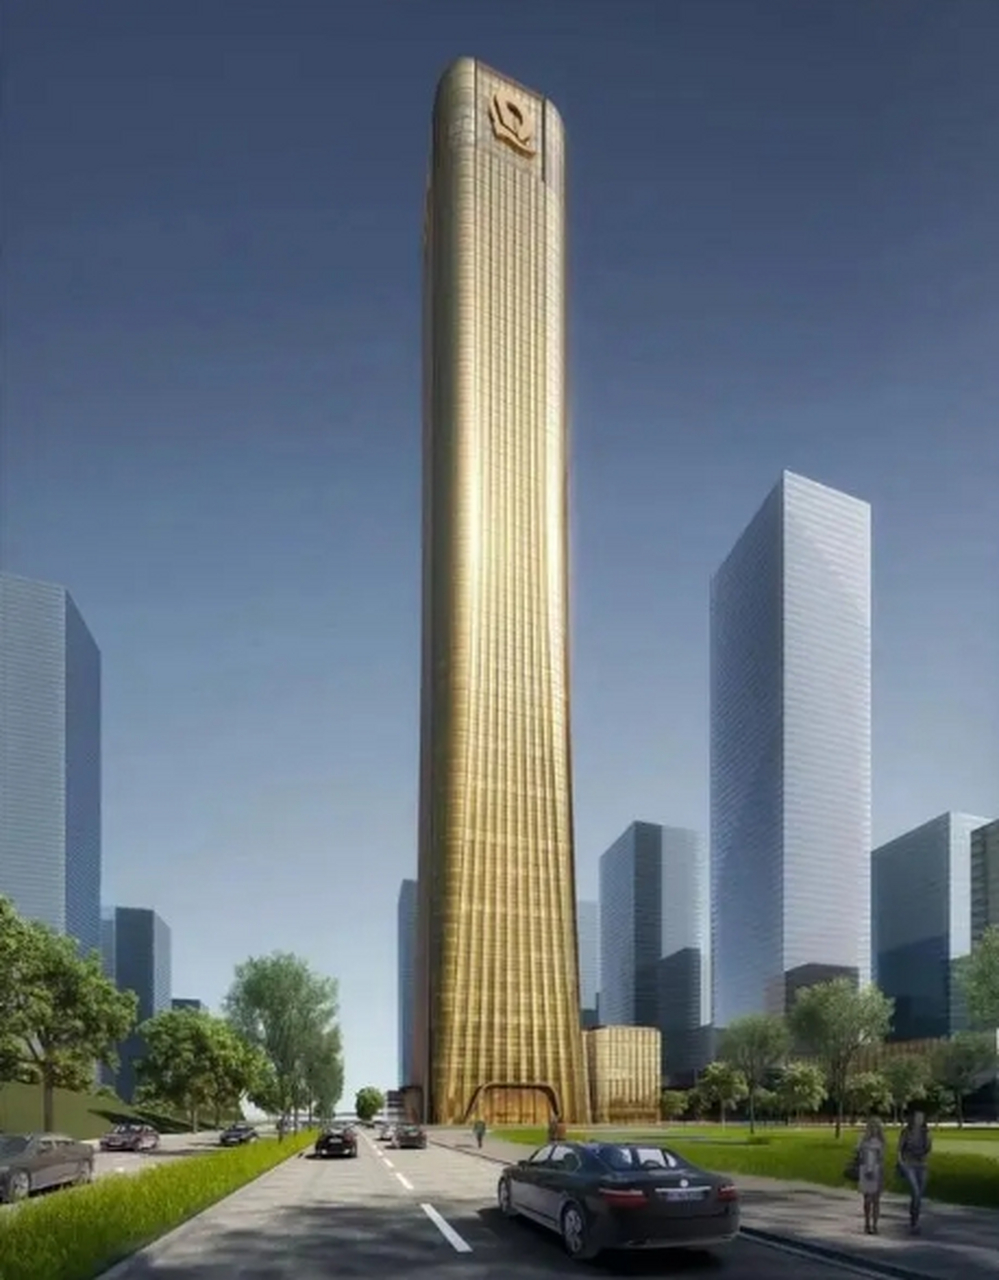 如今深圳安居建业集团接管了恒大超级总部基地地块的经营权,b塔的设计